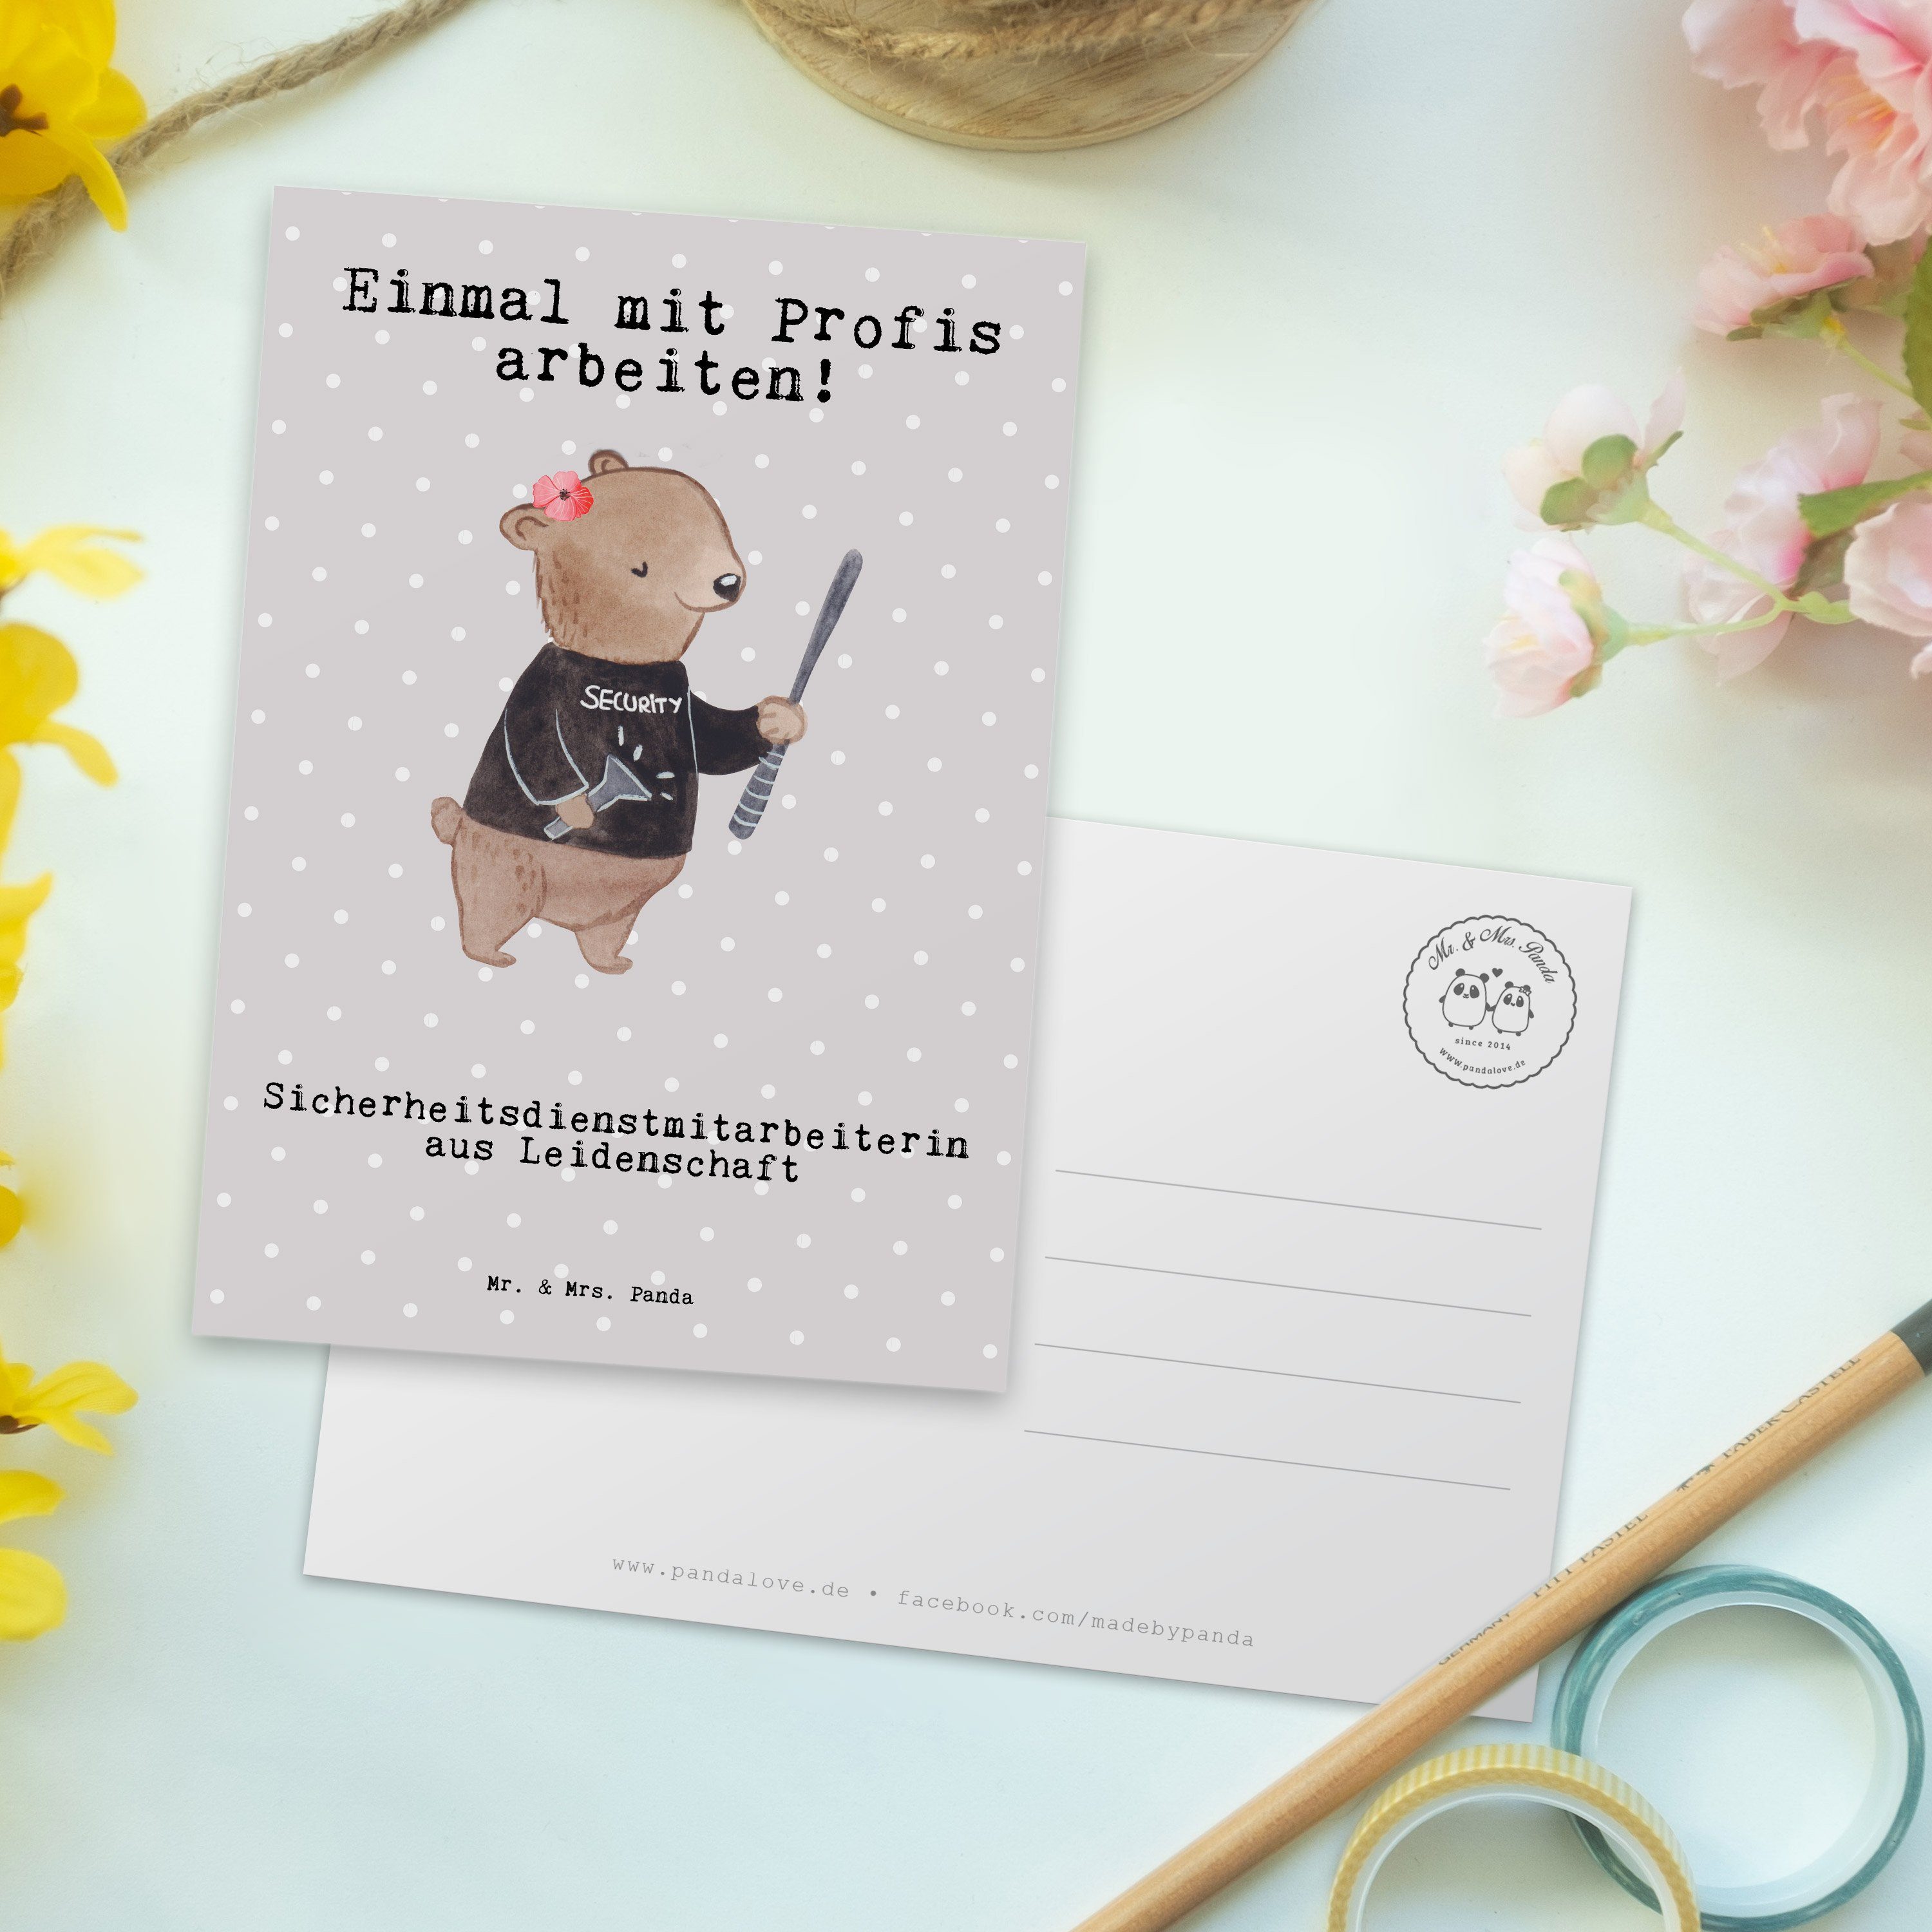 Mr. & Mrs. Panda - Grau Pastell Sicherheitsdienstmitarbeiterin Leidenschaft Postkarte - Gesc aus